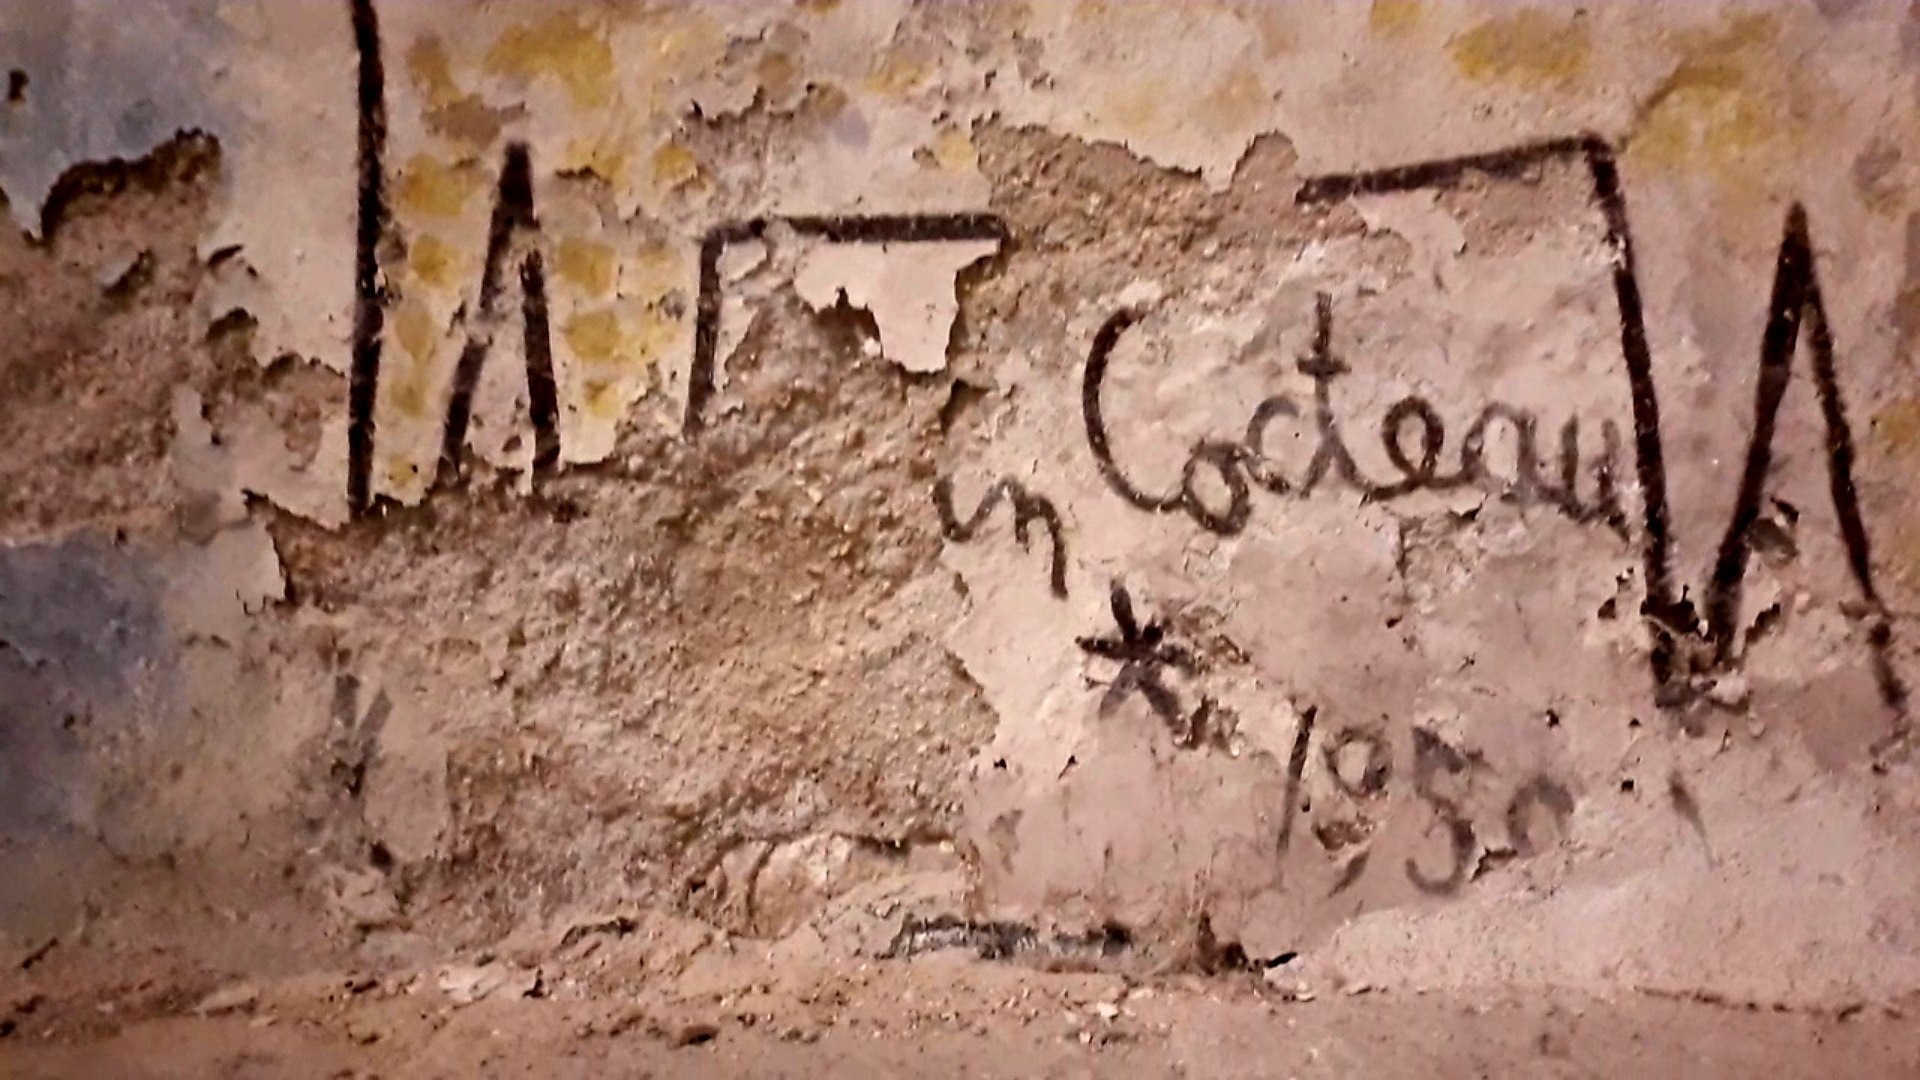 Patrimoine : la signature de Jean Cocteau se dégrade dans sa chapelle -  Vidéo Dailymotion